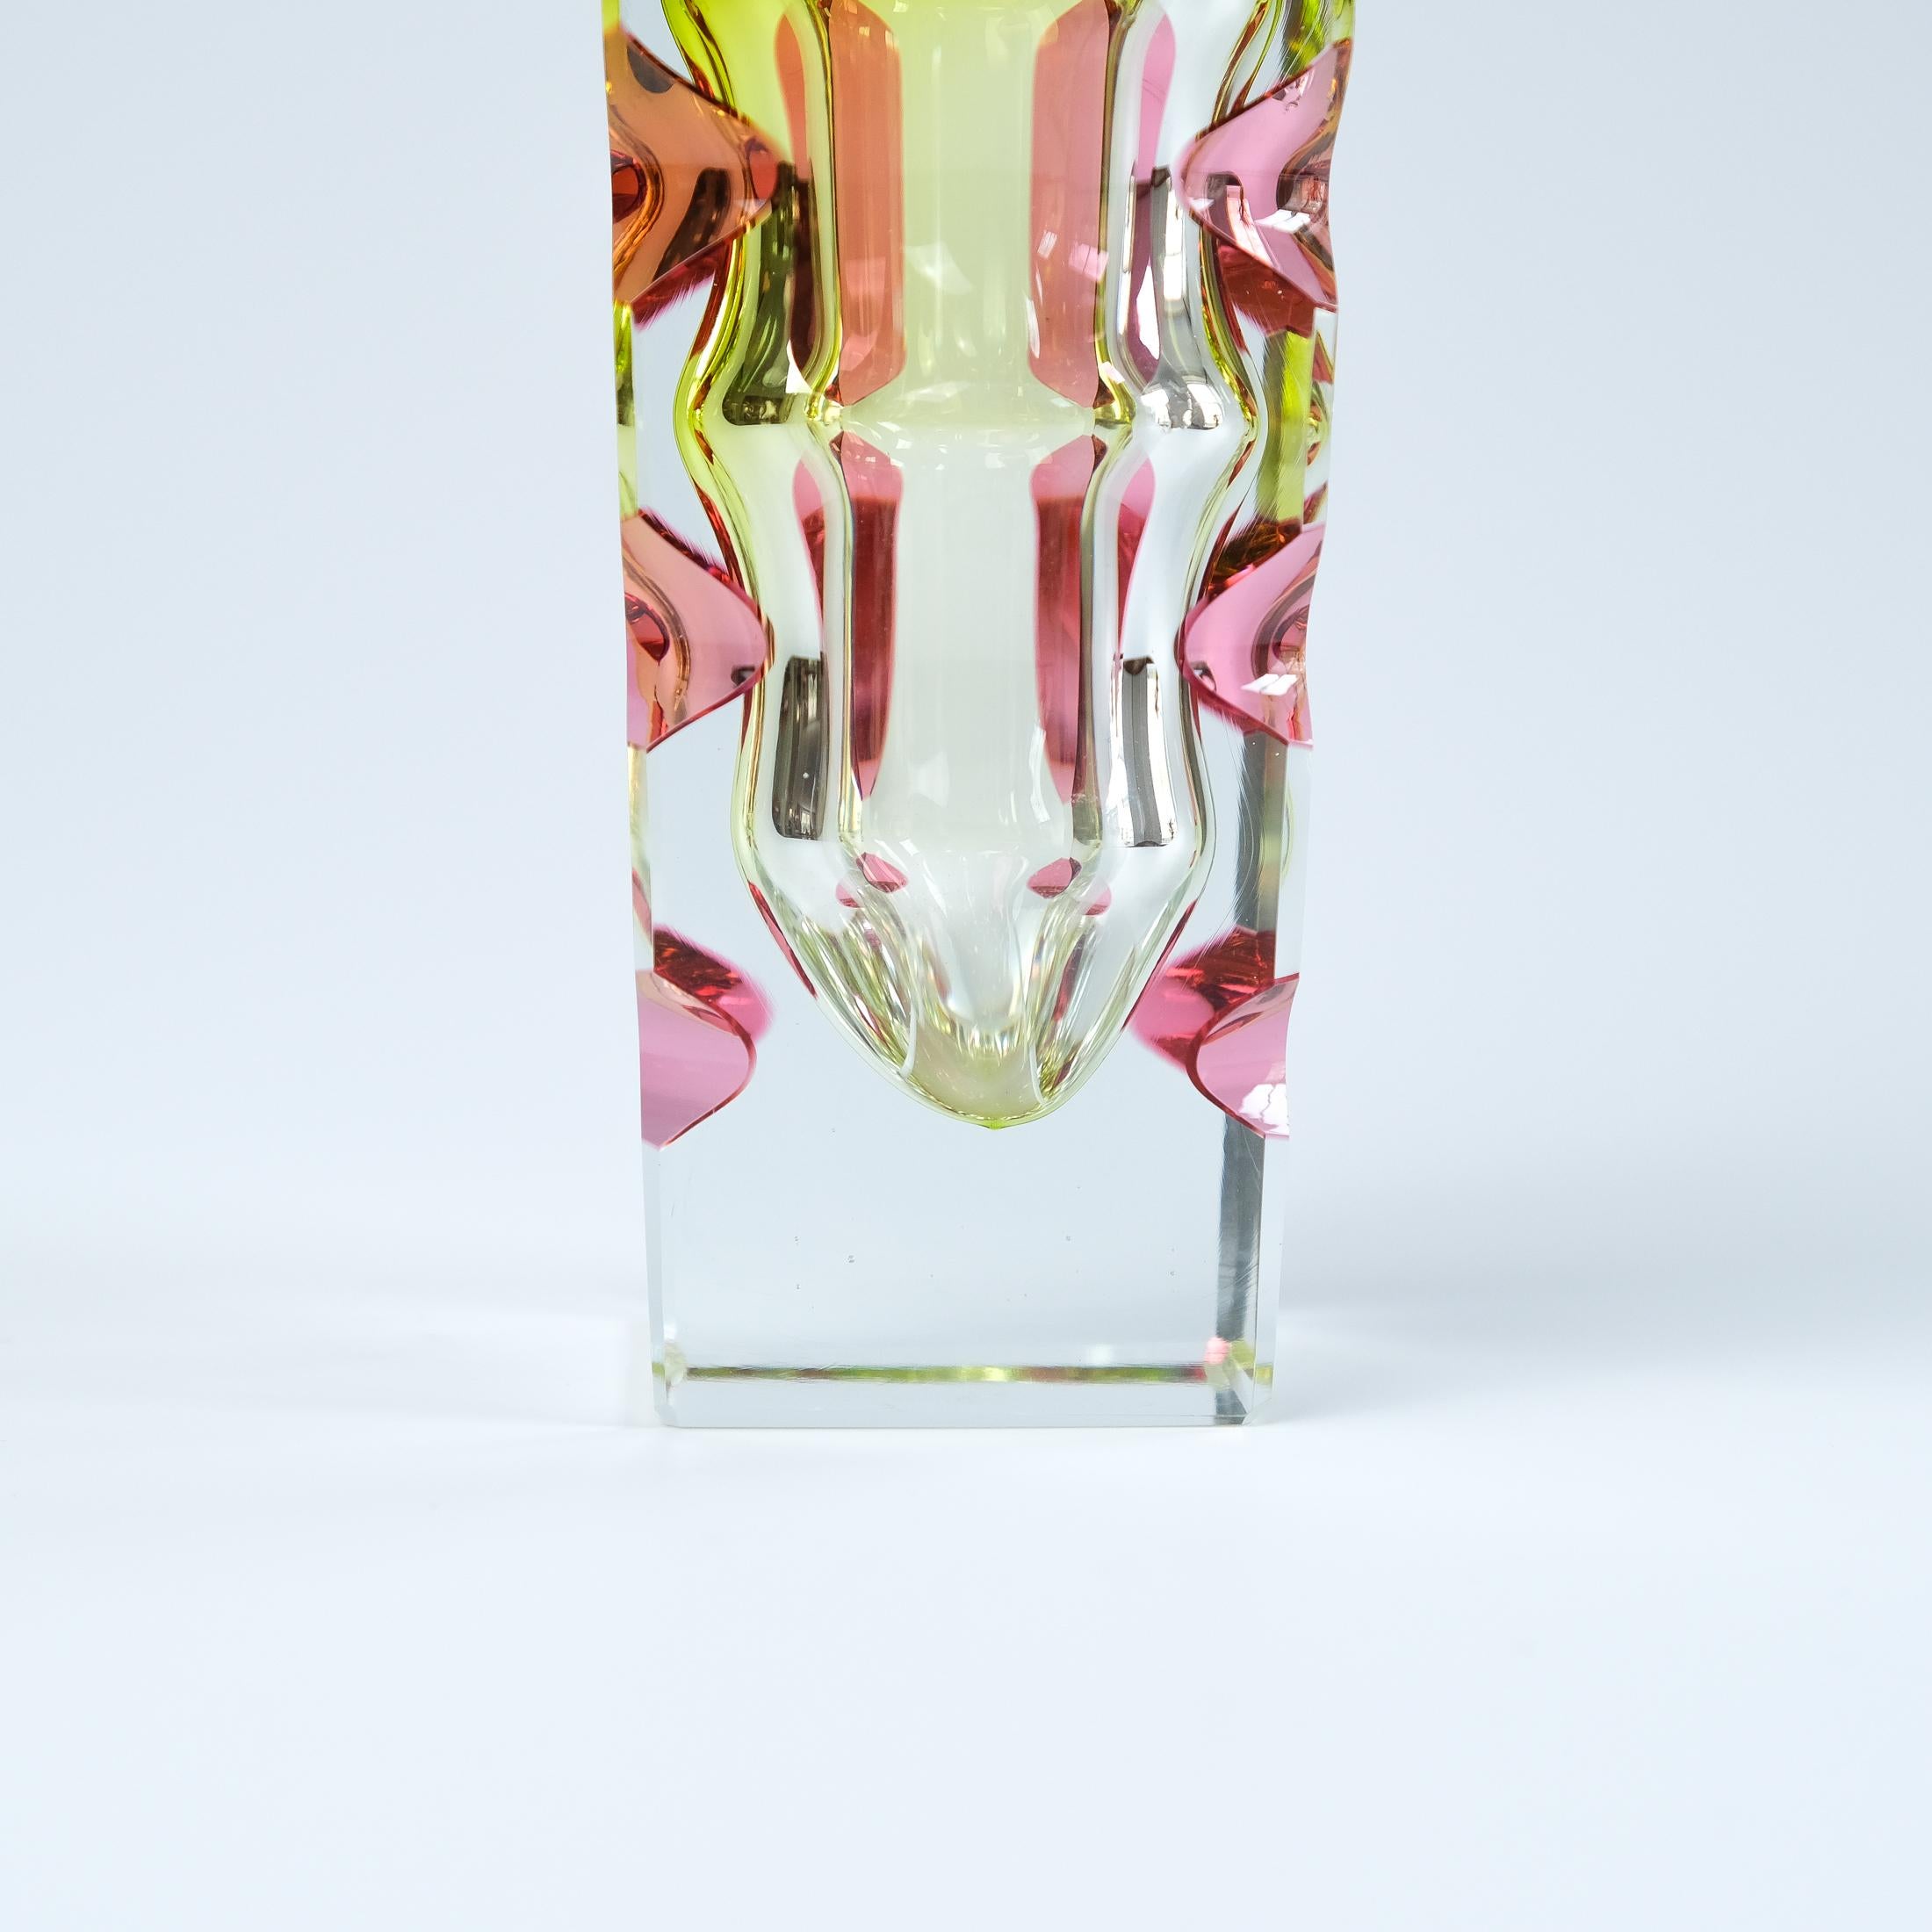 Oldrich Lipsky Cased & Cut Glass Vase For Novy Bor Exbor, Czechoslovakia c.1964 For Sale 2